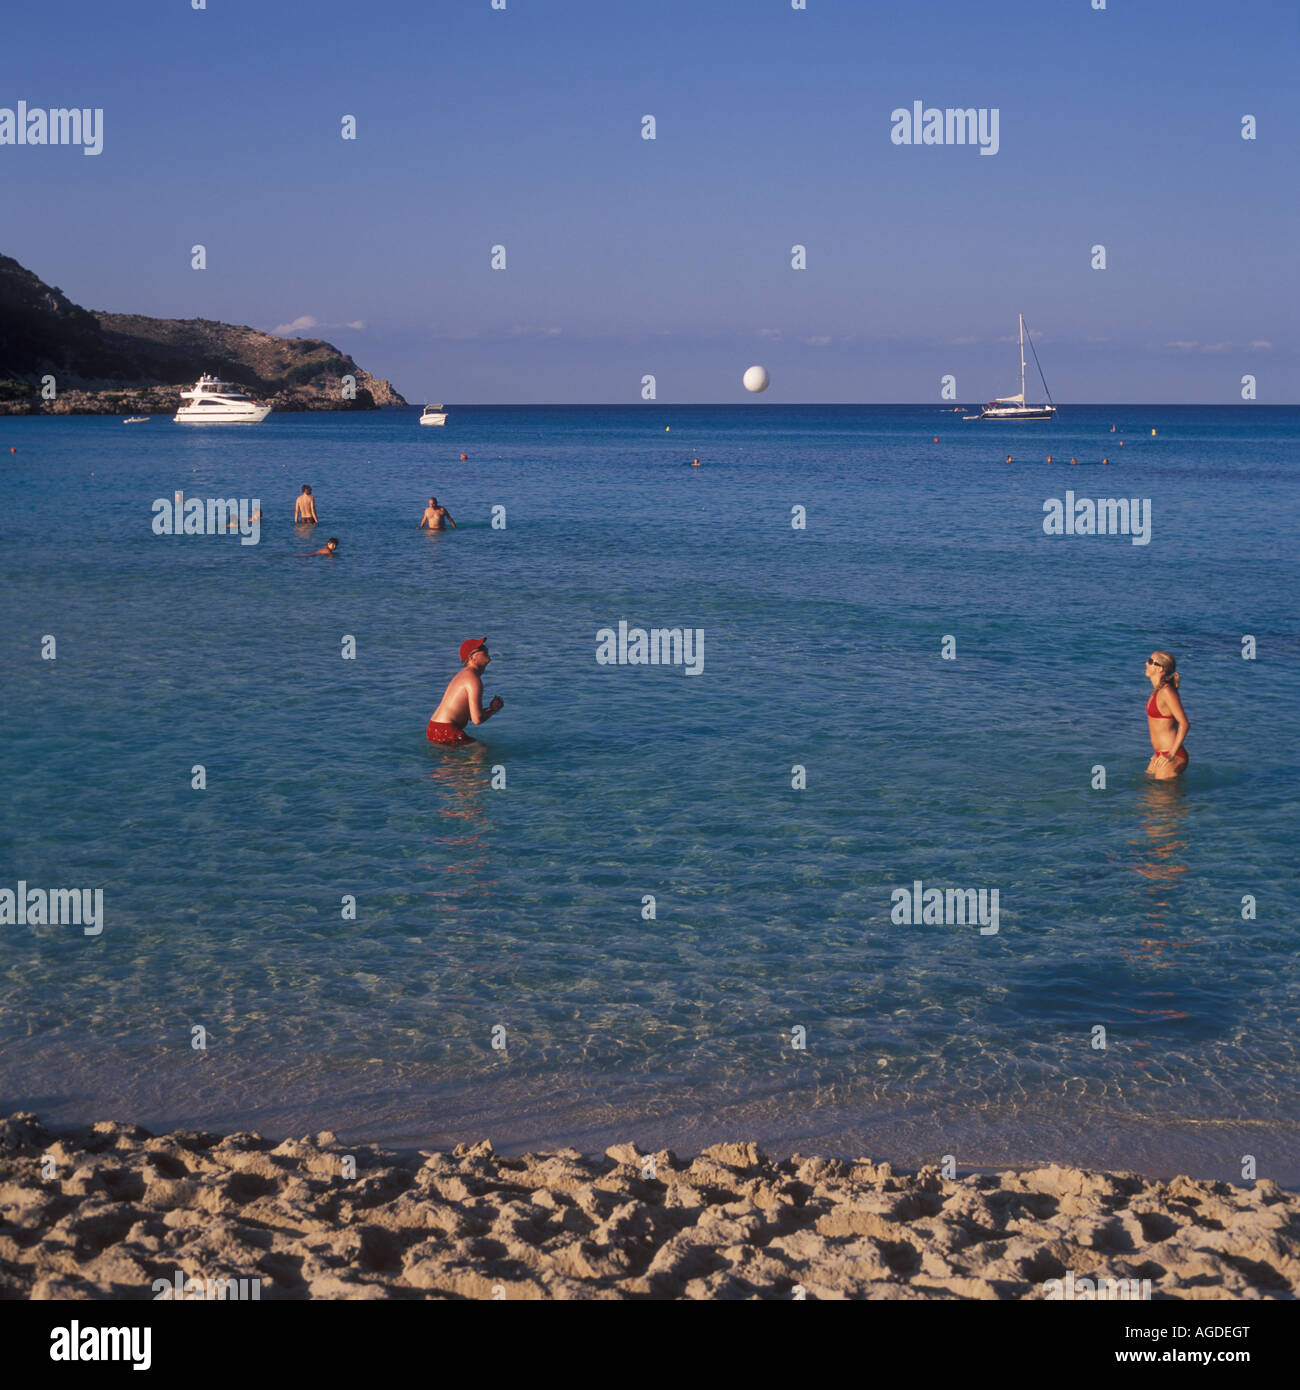 Watersports on idyllic sandy beach at Cala Agulla near Cala Ratjada, North East Mallorca, Balearic Islands, Spain. Stock Photo